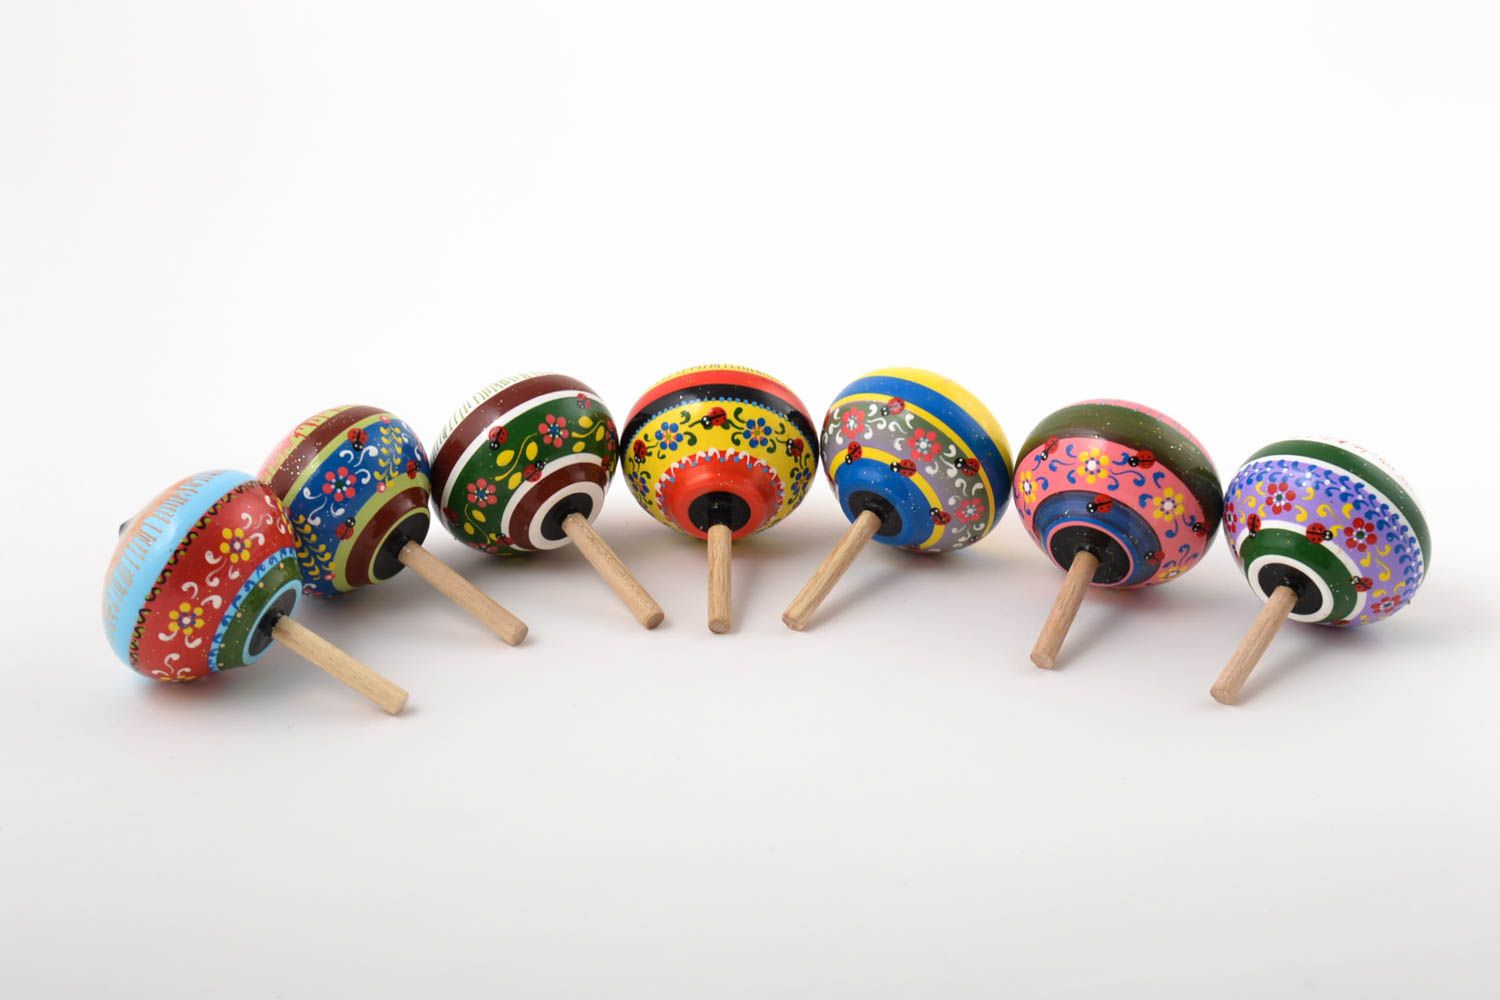 Игрушки из дерева ручной работы юлы игрушки изделия из дерева, набор 7 штук фото 3